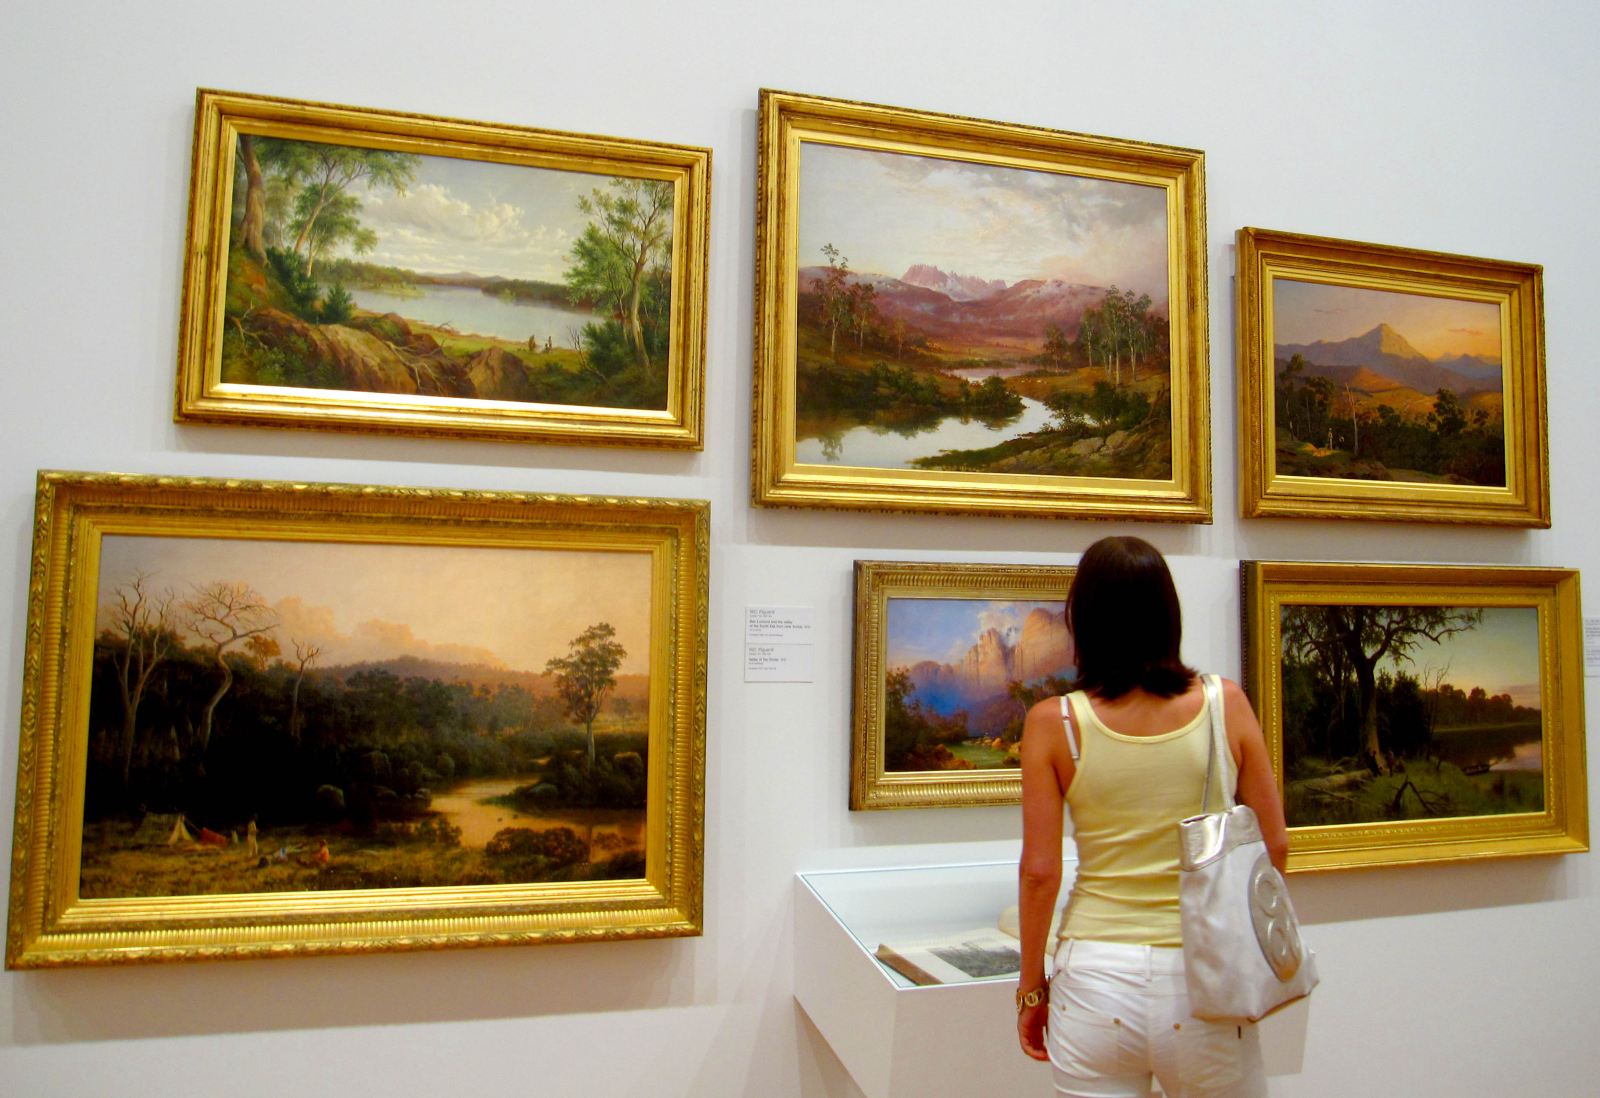 Queensland art gallery